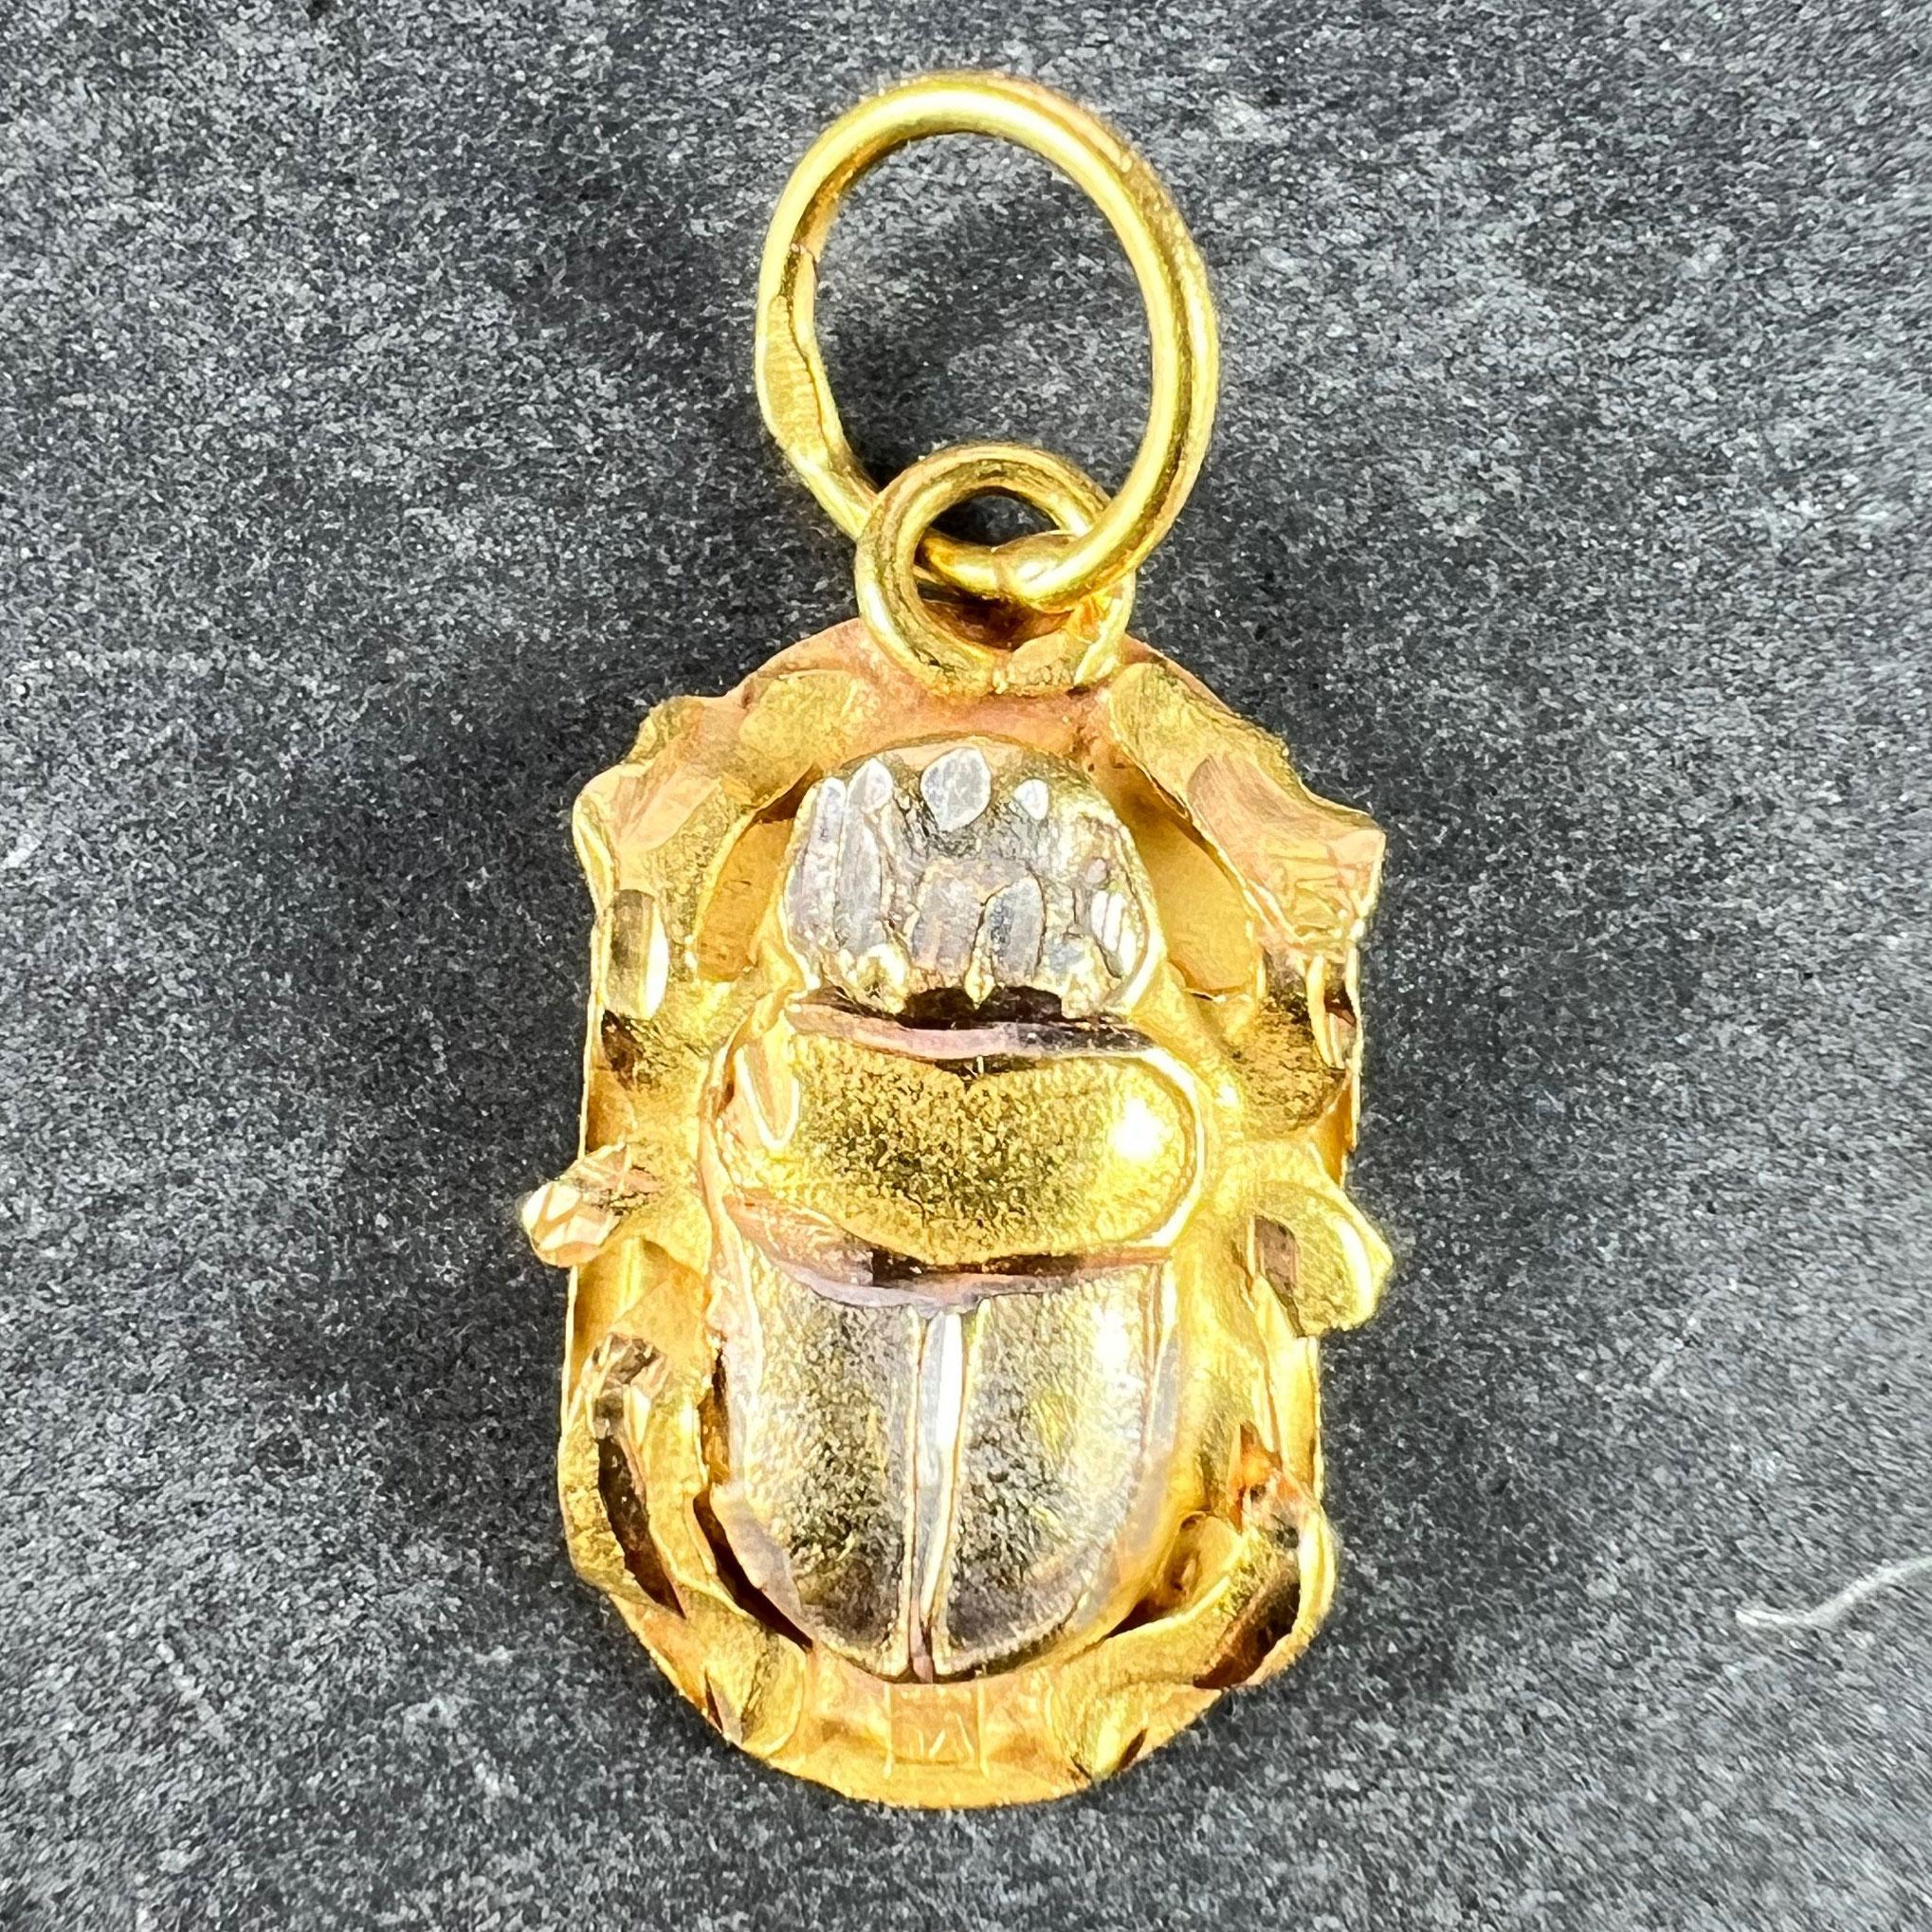 Pendentif égyptien en or jaune et blanc 18 carats (18K) conçu comme l'amulette protectrice d'un scarabée égyptien, avec un relief d'un scarabée retenant le soleil au revers dans un cartouche. Estampillé de la marque égyptienne pour l'or 18 carats.
